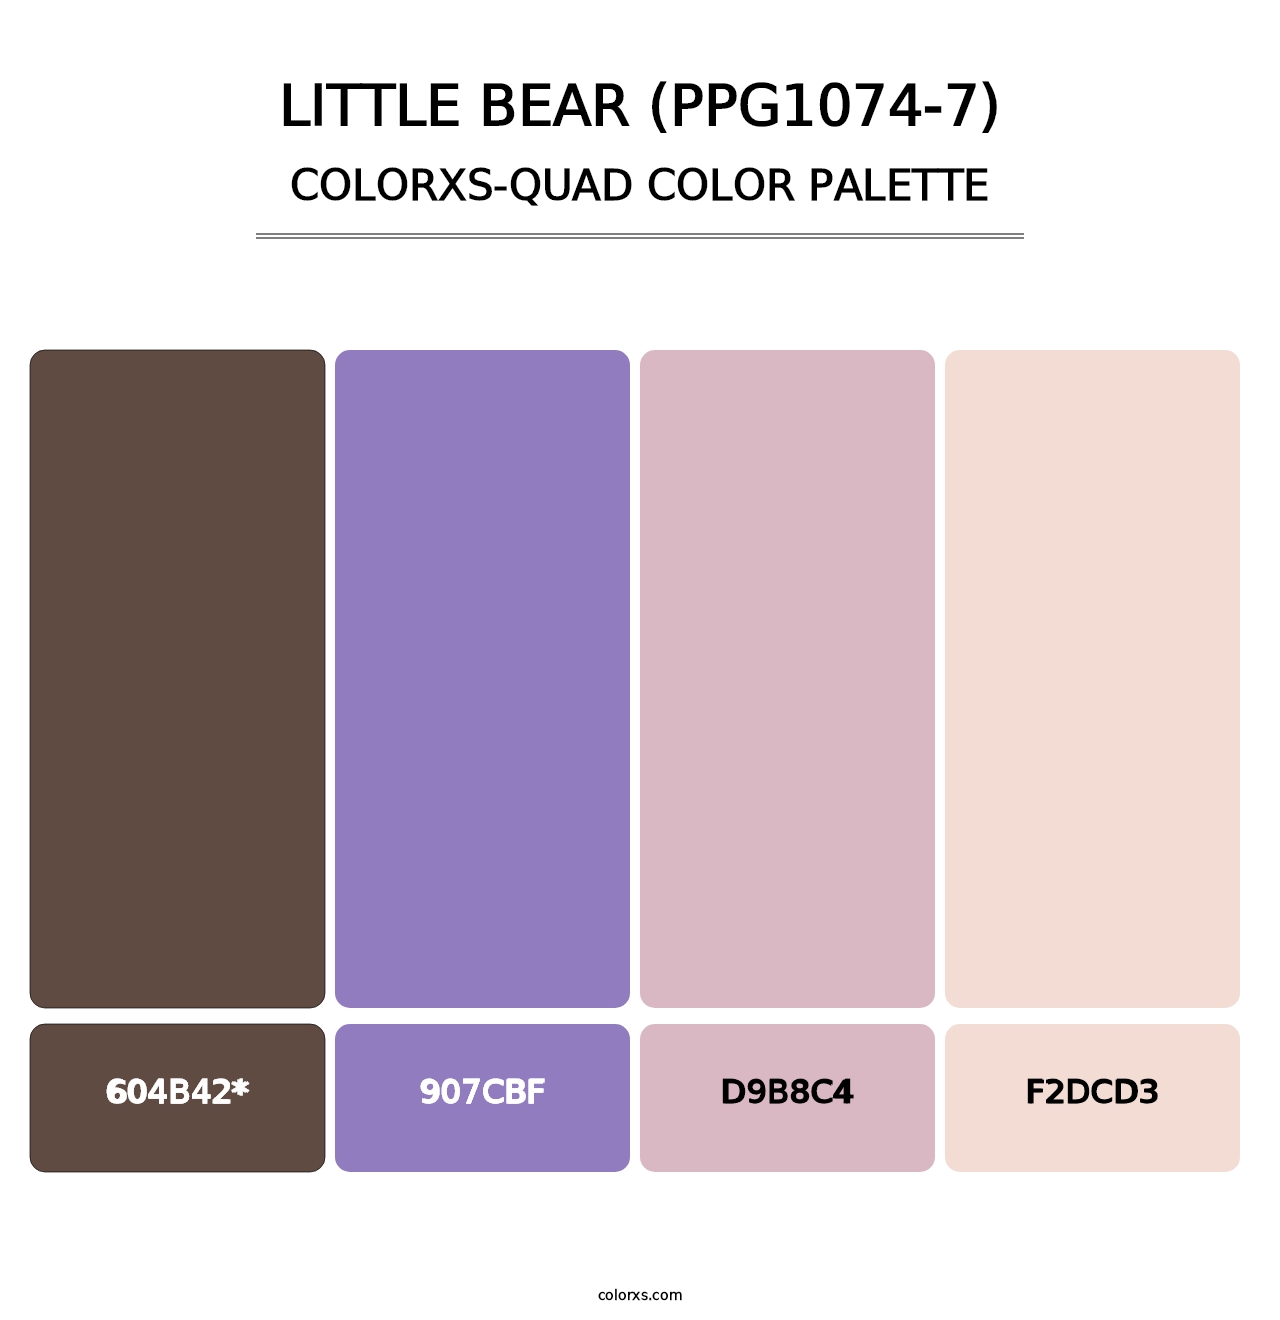 Little Bear (PPG1074-7) - Colorxs Quad Palette